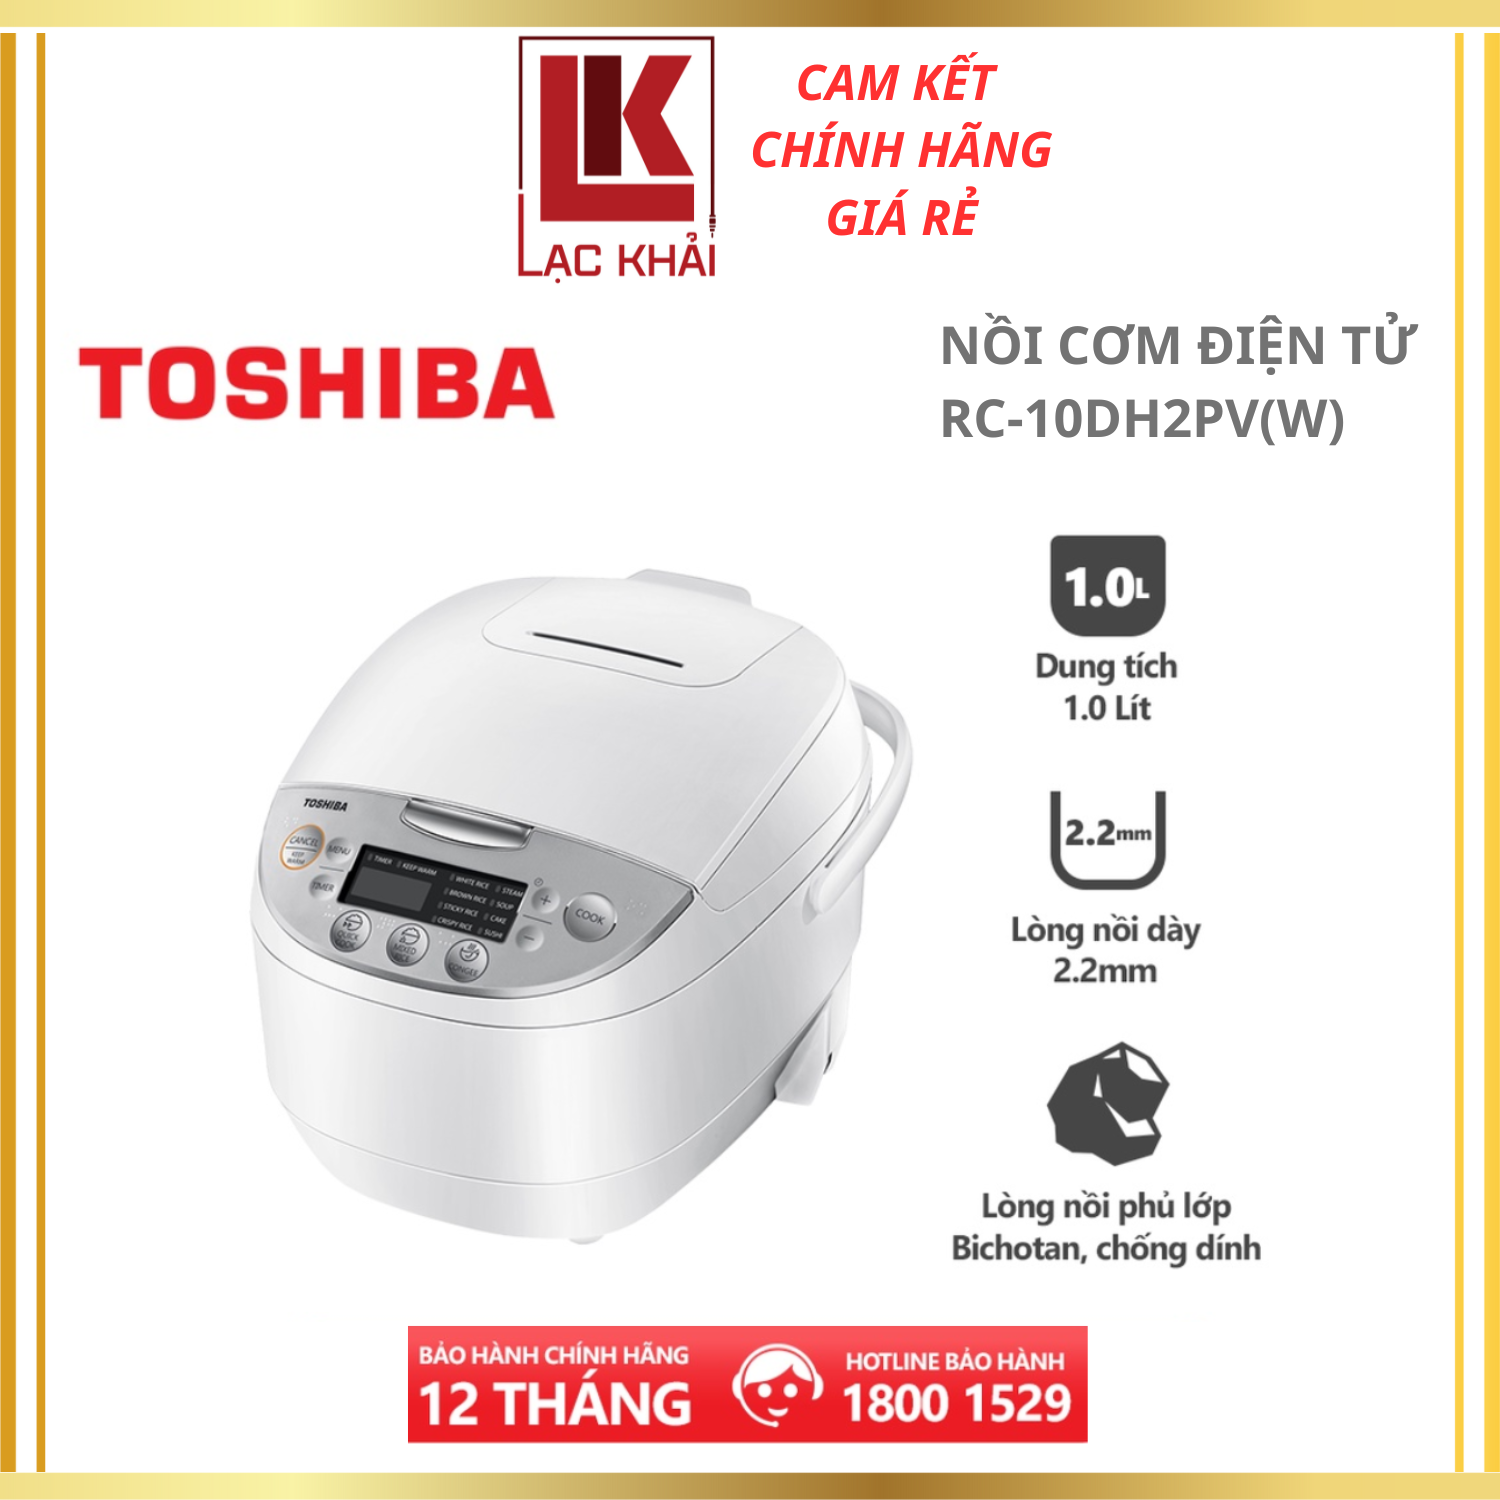 Nồi cơm điện tử Toshiba RC-10DH2PV(W) - 1.0L - Lòng nồi dày 2.2mm, chống dính - Hàng chính hãng, bảo hành 12 tháng